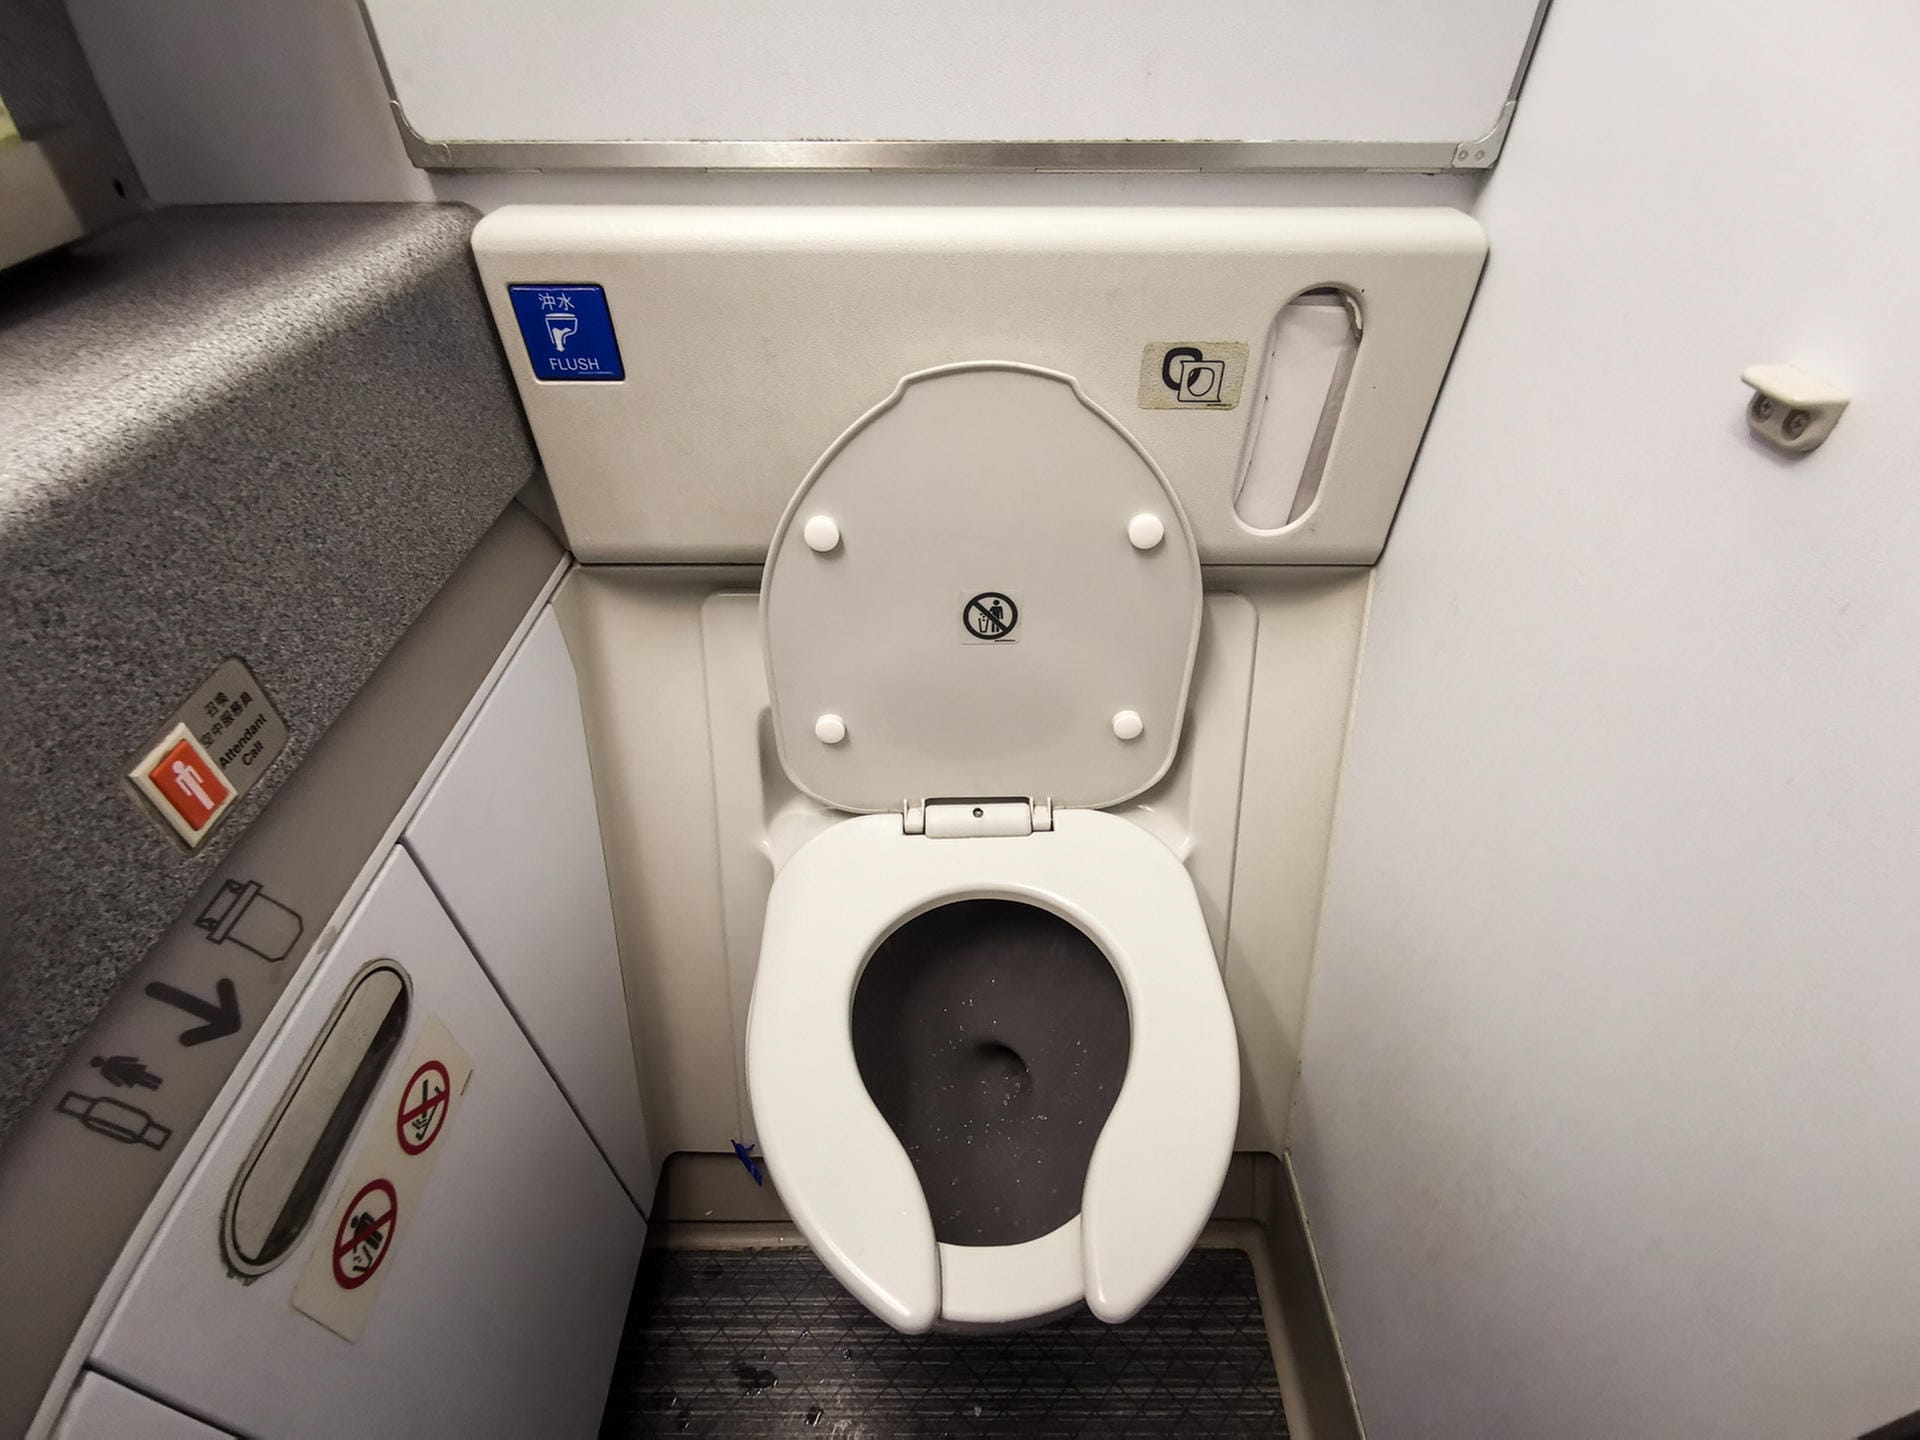 Flugzeugtoiletten: Die Toiletten werden während des Fluges entleert? Falsch. Alle Substanzen, die in der Toilette hinuntergespült werden, speichert ein Tank, der dann nach der Ankunft am Flughafen entleert wird. Das Waschwasser aus den Handwaschbecken wird allerdings fein zerstäubt in die Atmosphäre entlassen.